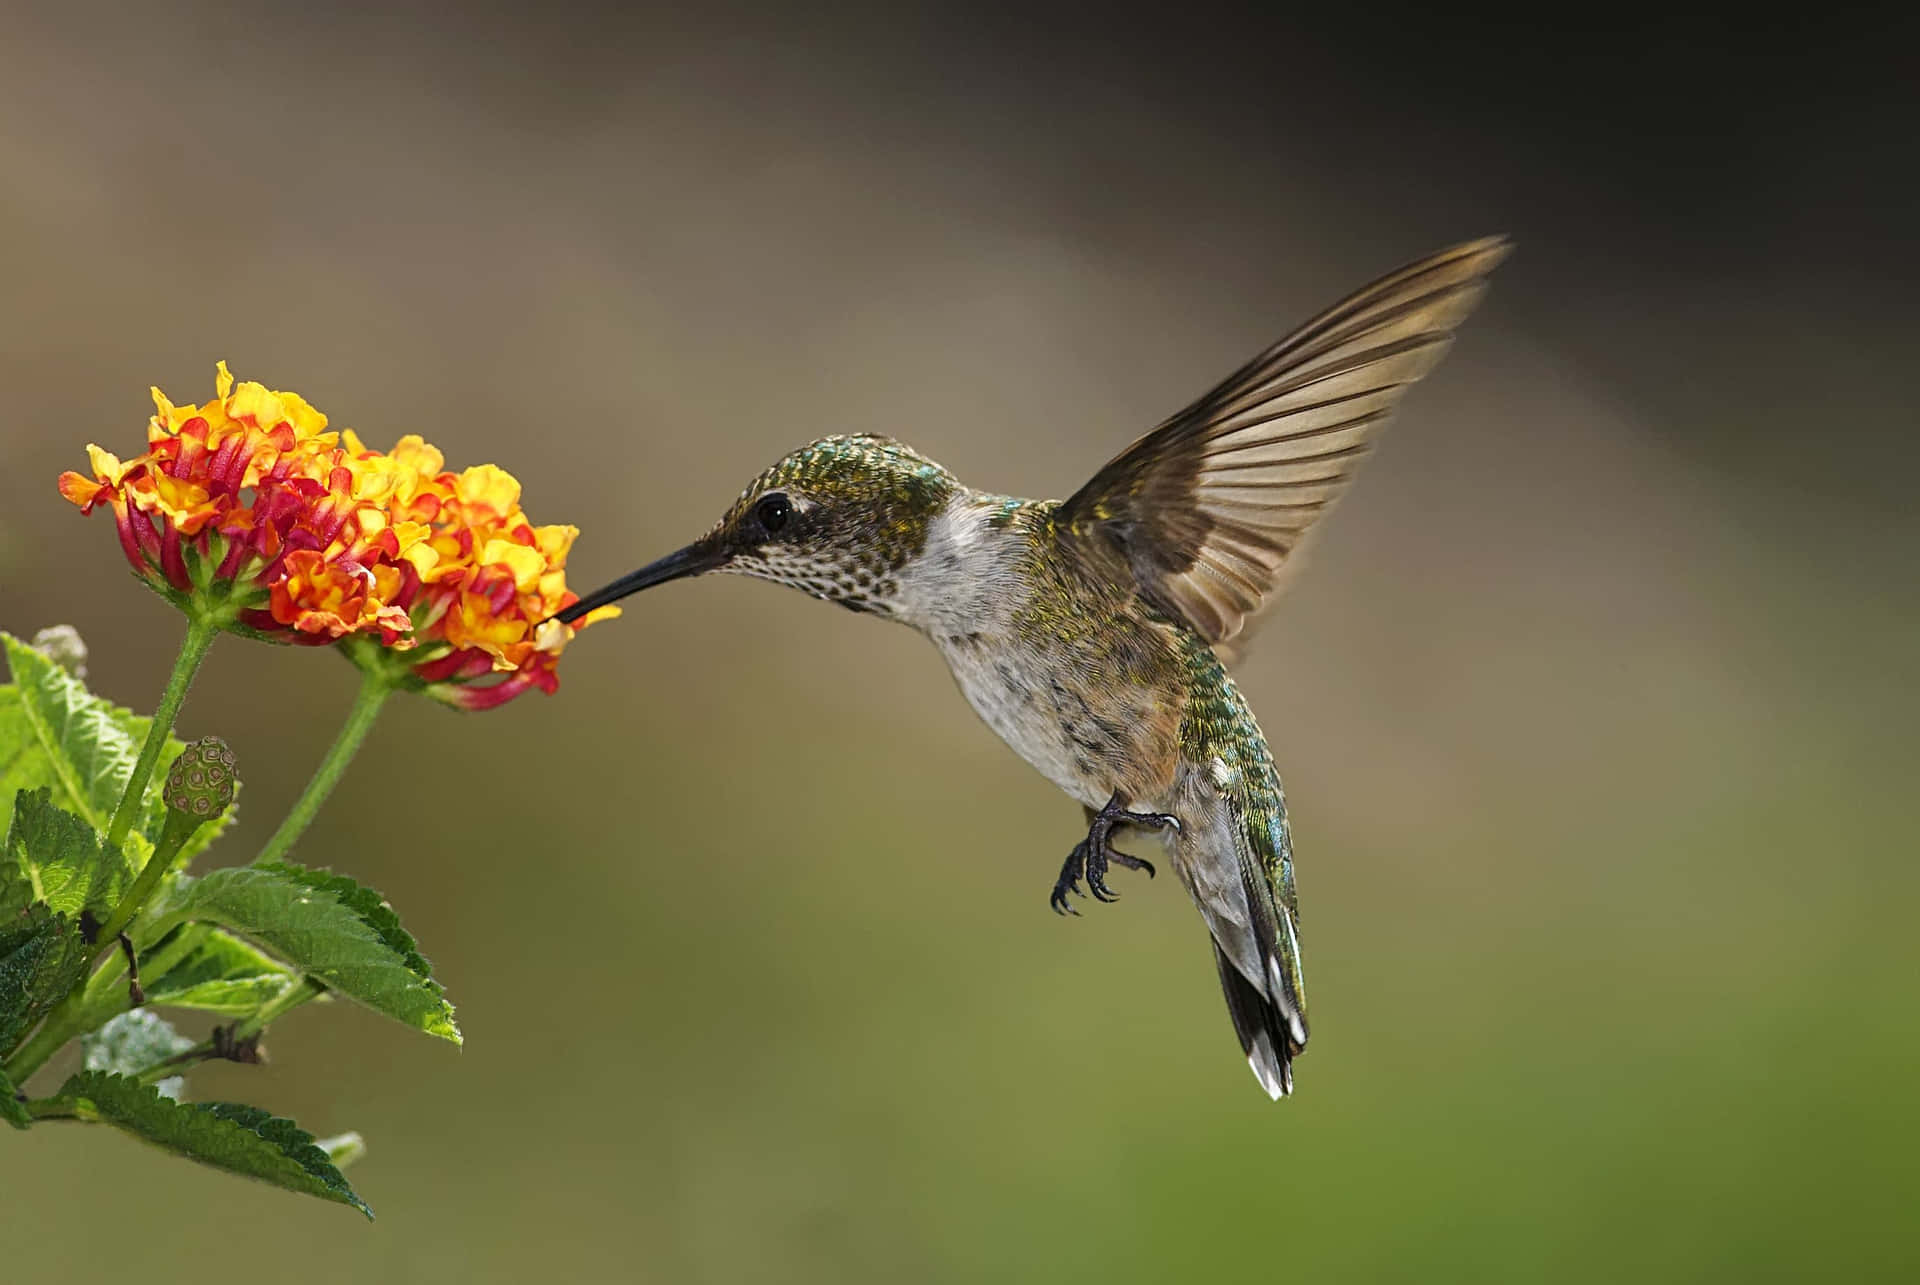 Hummingbird billedskønne scenerier imponerer med sine kraftige farver.